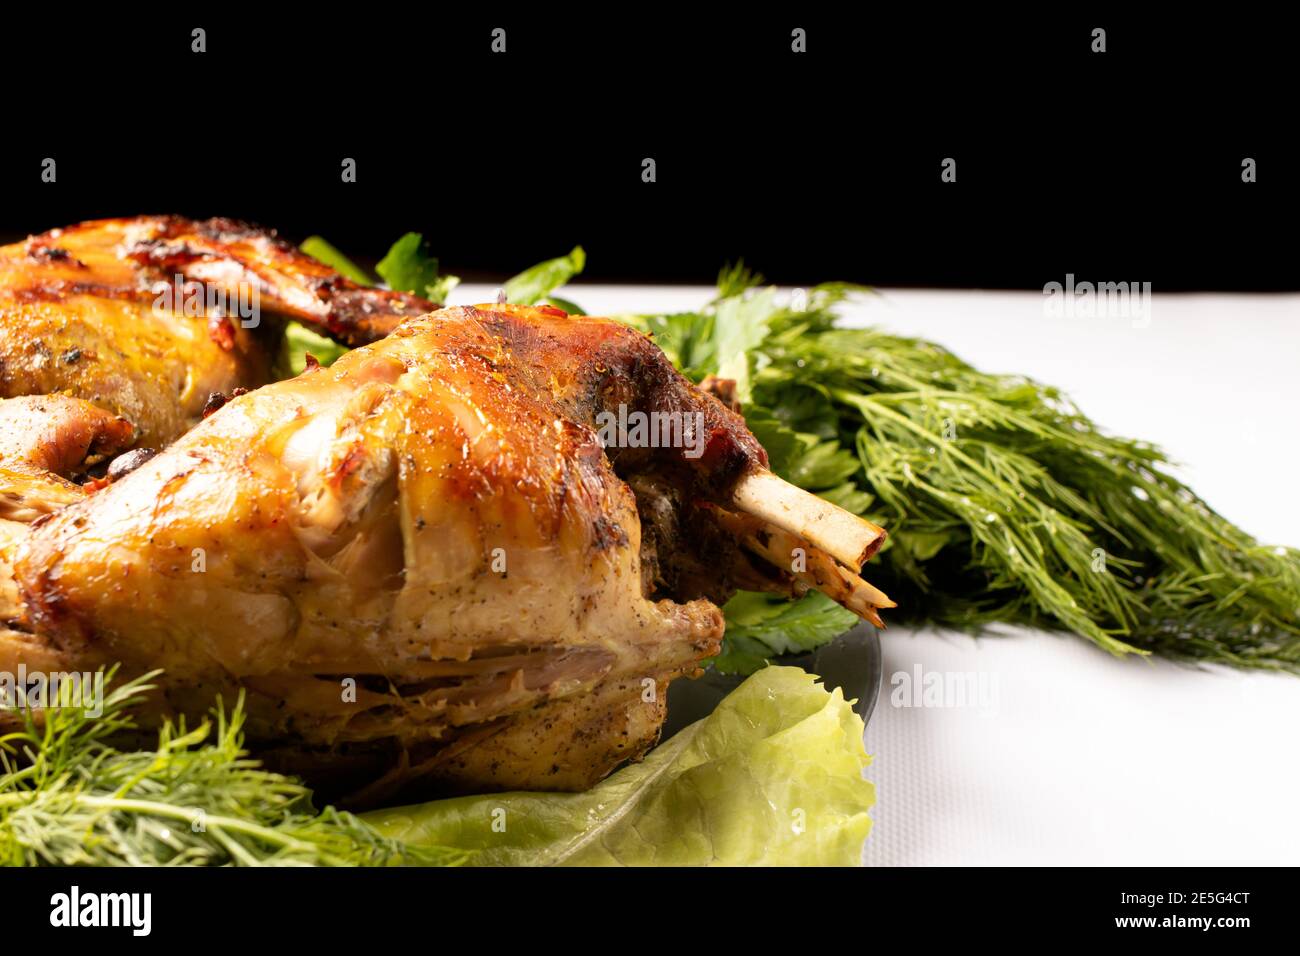 Kaninchenfleisch mit Gemüse und Kräutern auf einem Teller gebacken Auf einem schwarz-weißen Hintergrund Stockfoto